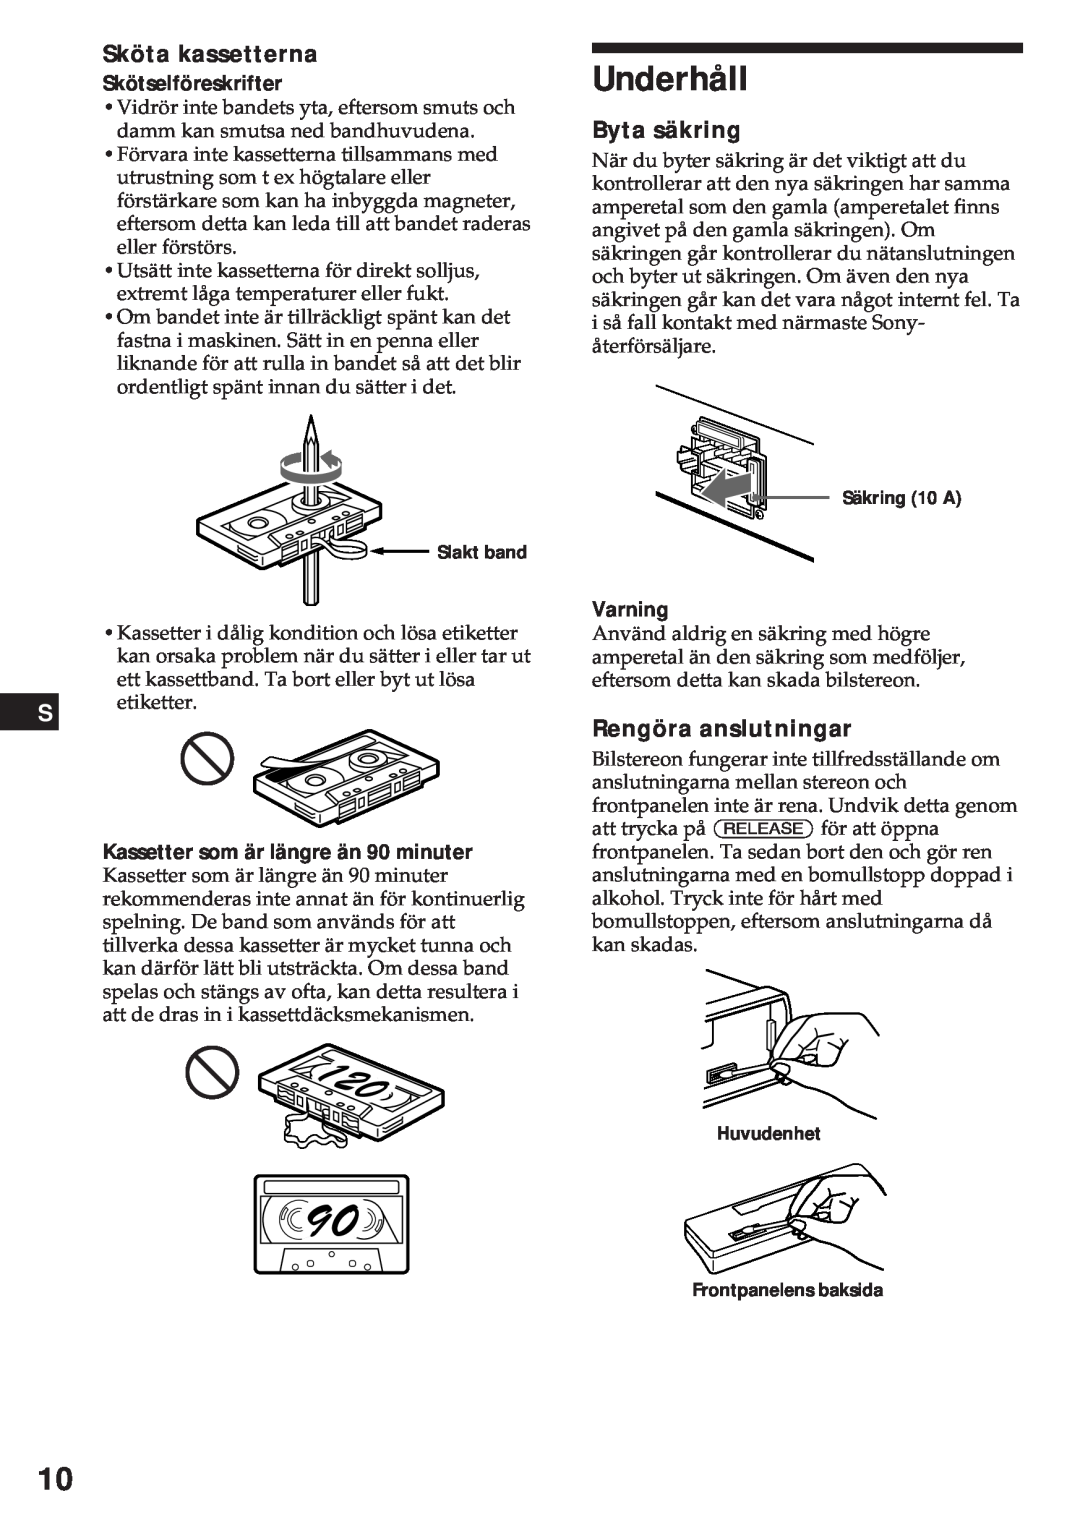 Sony XR-3750 Underhåll, Sköta kassetterna, Byta säkring, Rengöra anslutningar, Skötselföreskrifter, Varning 